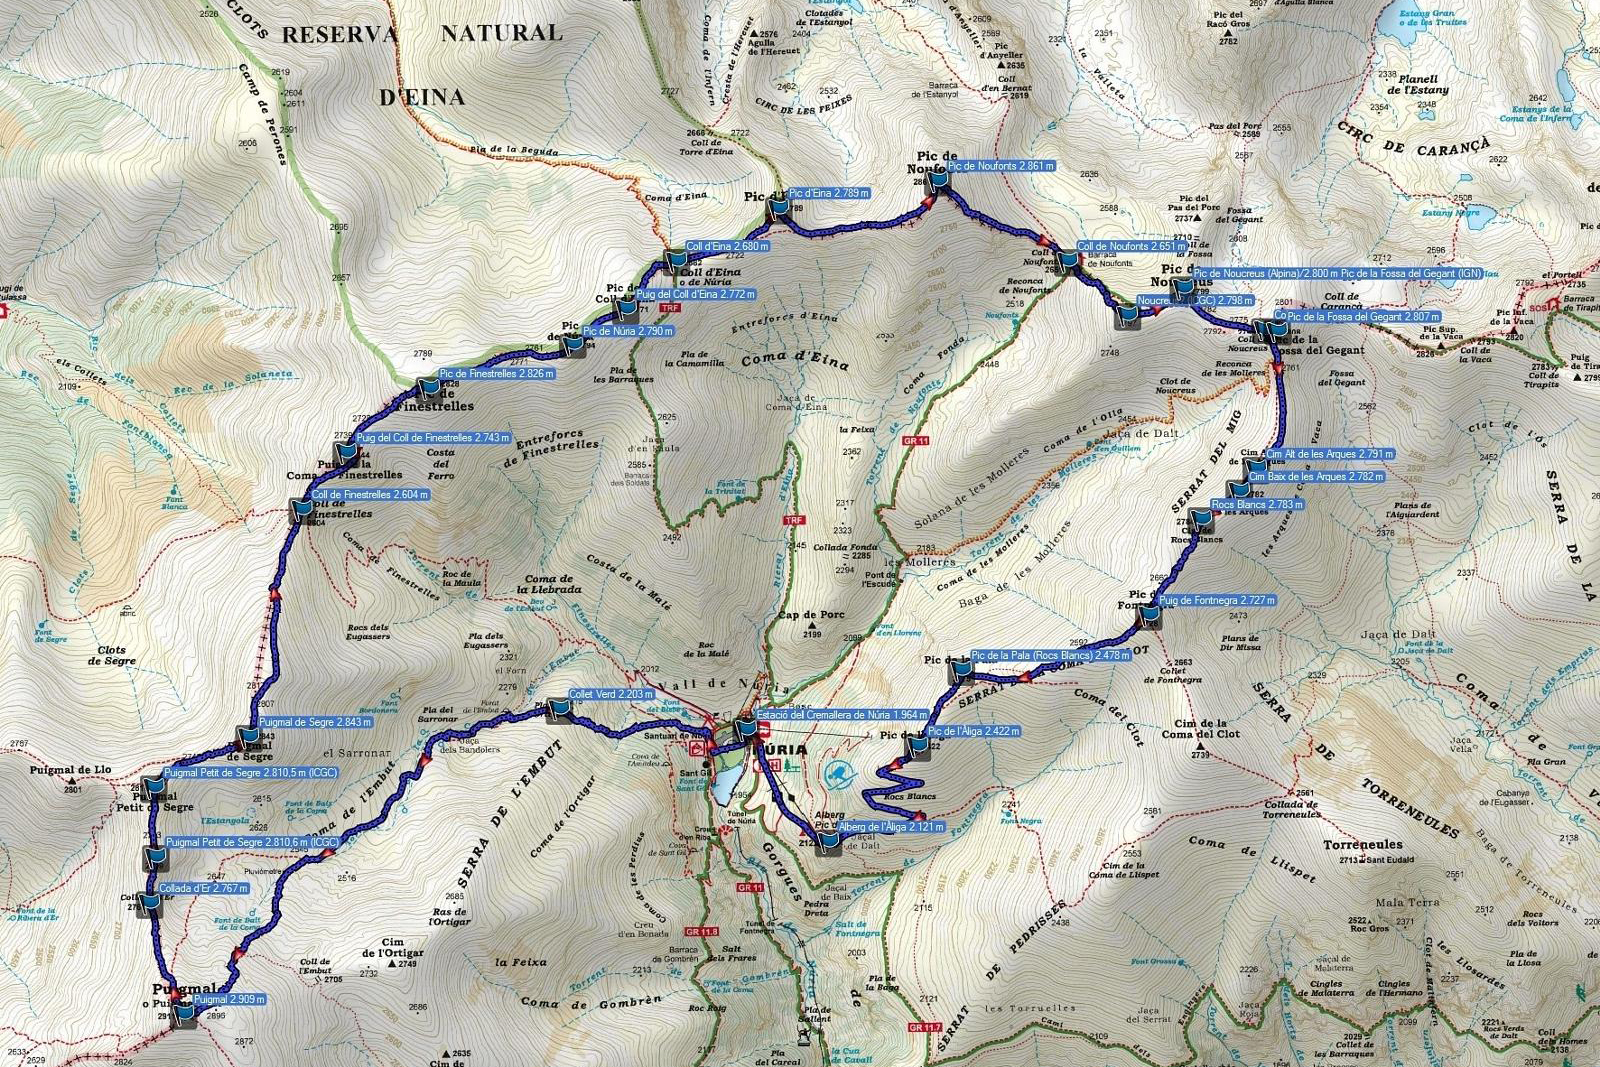 mapa-olla-de-buria-fuente-wikiloc.jpg 